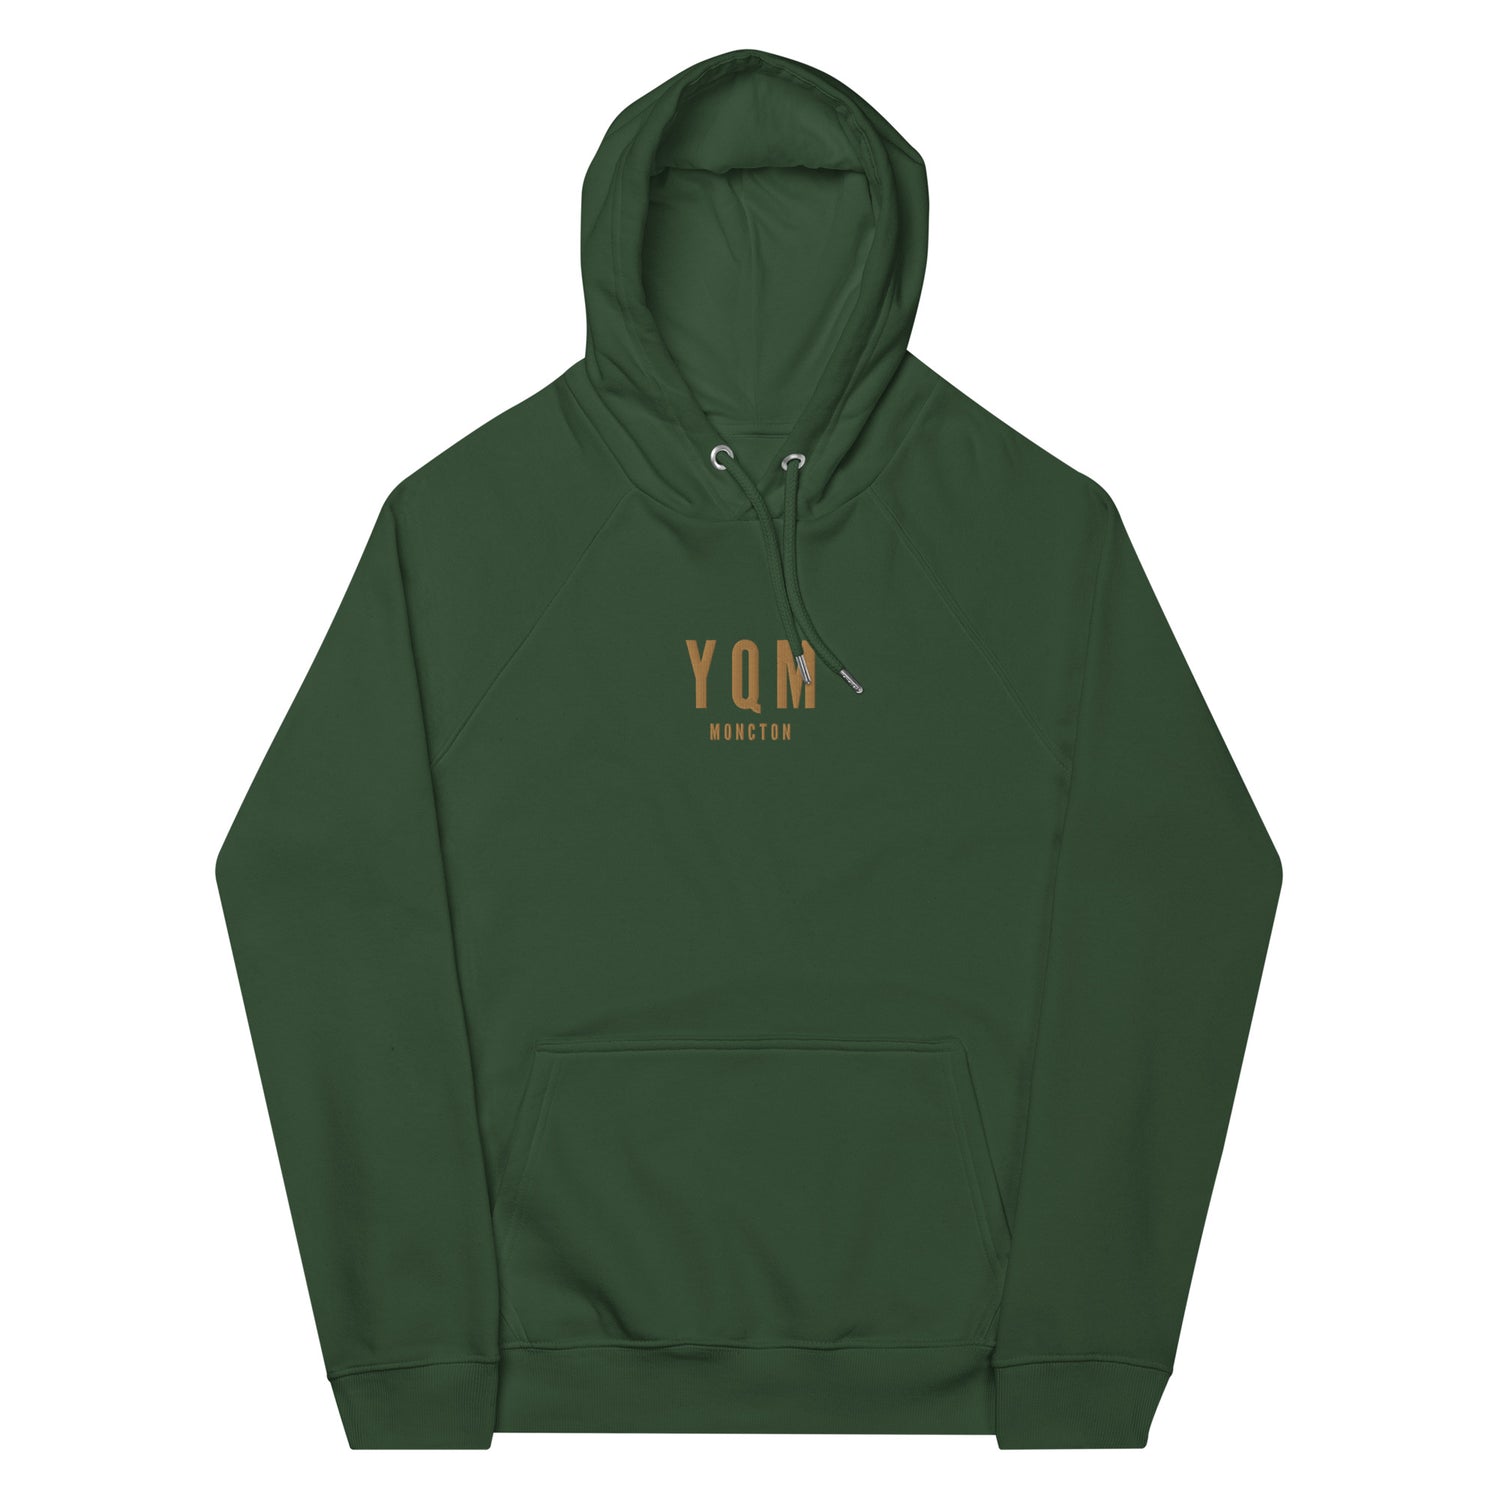 Moncton New Brunswick Hoodies and Sweatshirts • YQM Airport Code